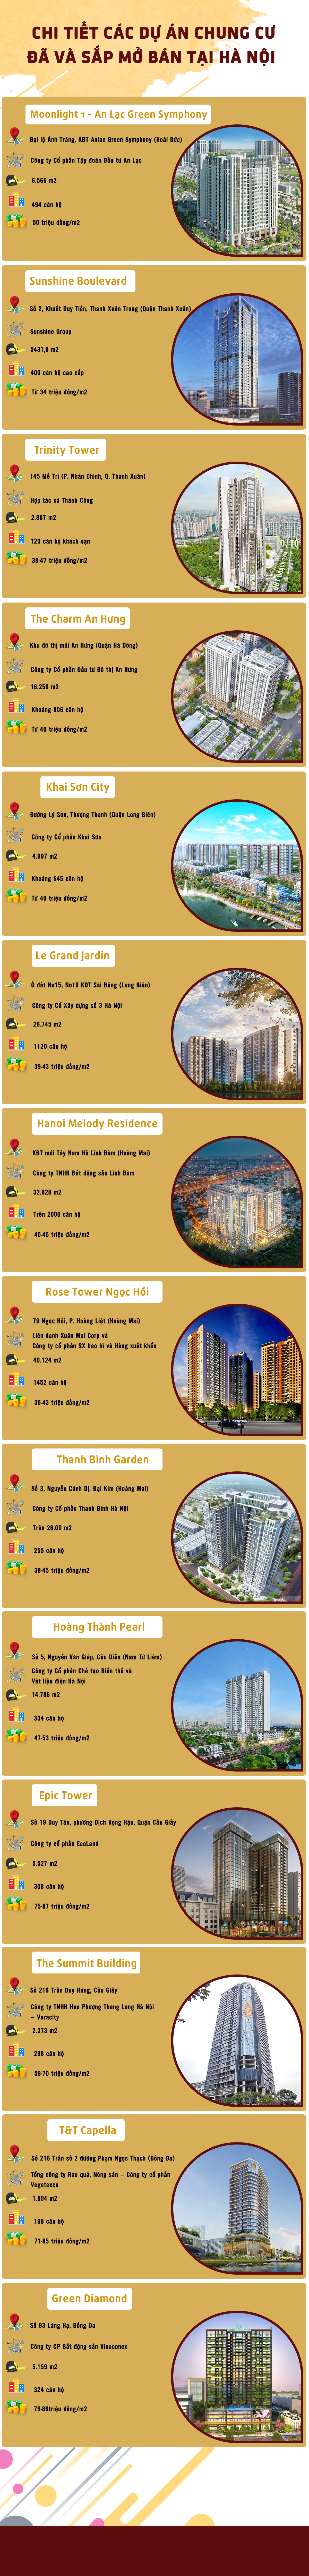 [Infographic] Chi tiết các dự án chung cư đã và sắp mở bán tại Hà Nội - Ảnh 1